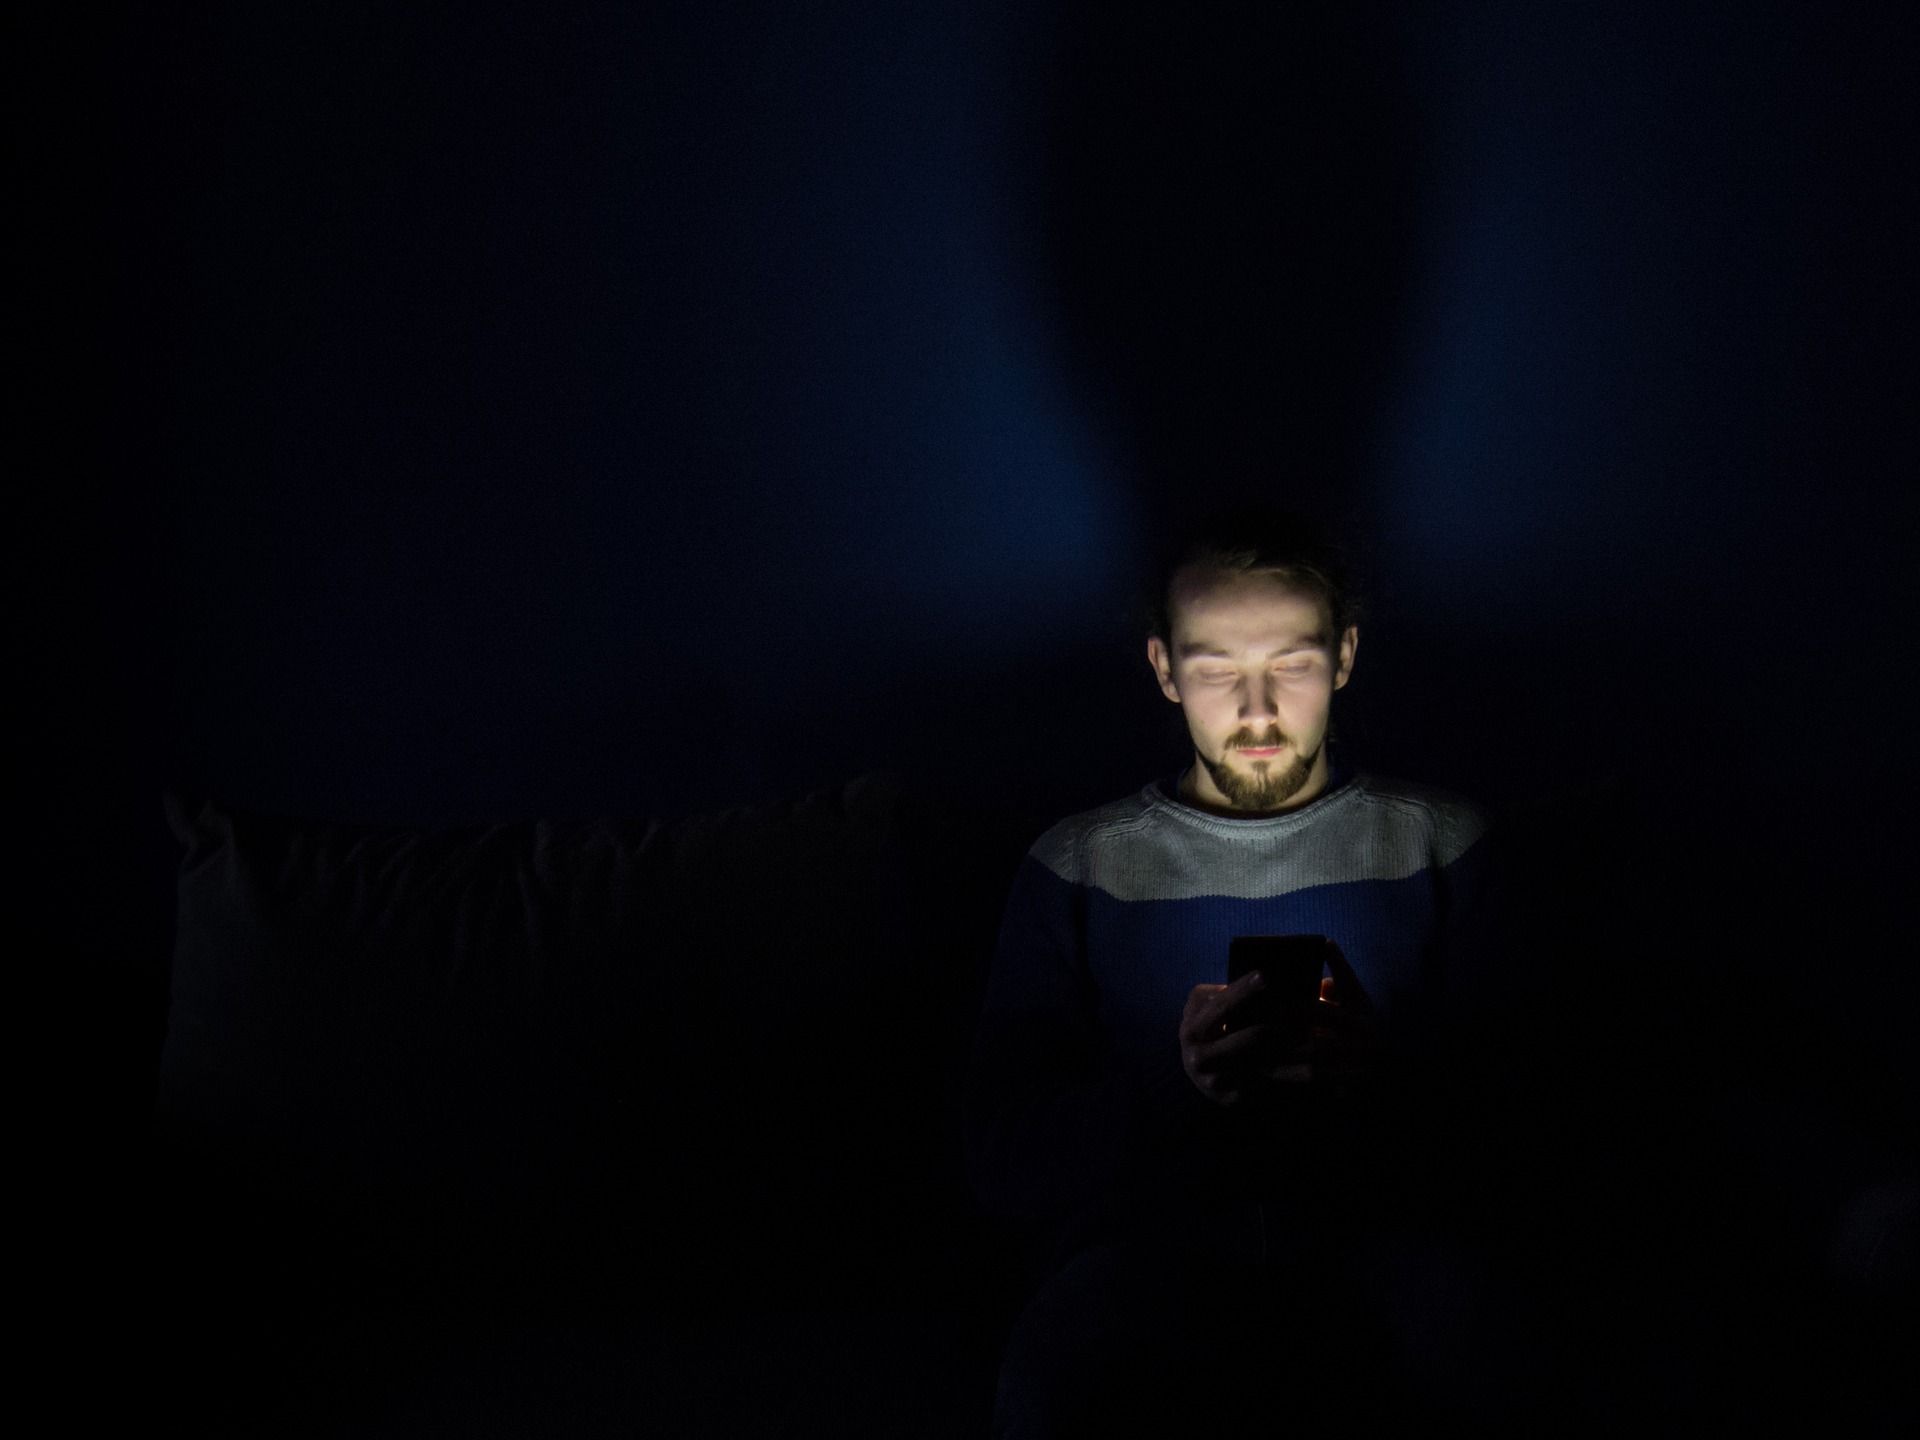 Un usuario hace uso de del 'smartphone'. Cenar tarde, la vida nocturna y el uso el móvil antes de dormir engorda / Foto: Krzysztof Kamil - Pixabay